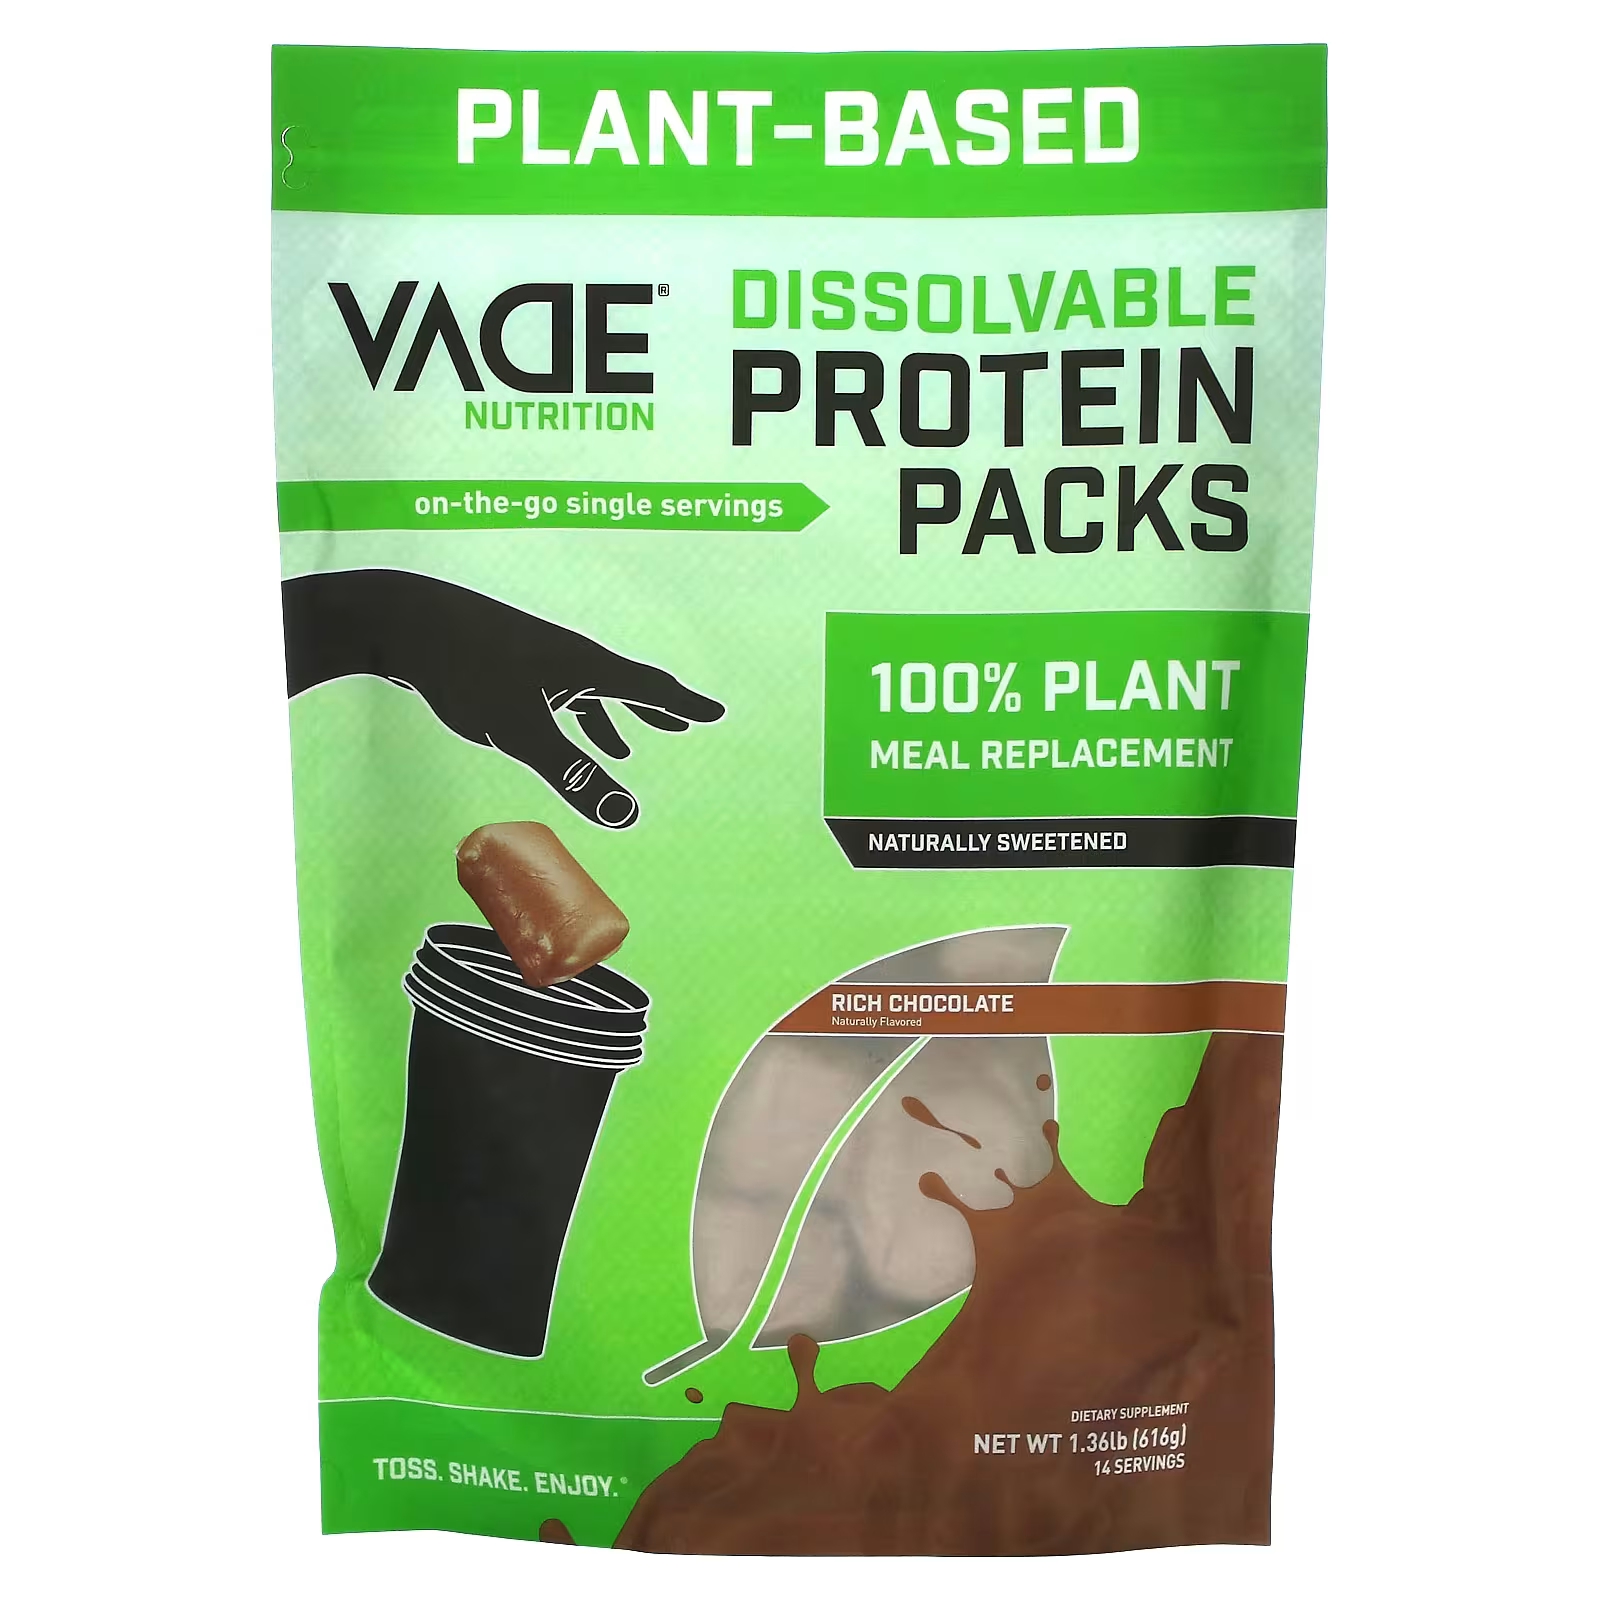 Растительный протеин Vade Nutrition Dissolvable Protein Packs со вкусом шоколада, 616 г california gold nutrition растительный протеин со вкусом шоколада веганский легкоусвояемый 907 г 2 фунта